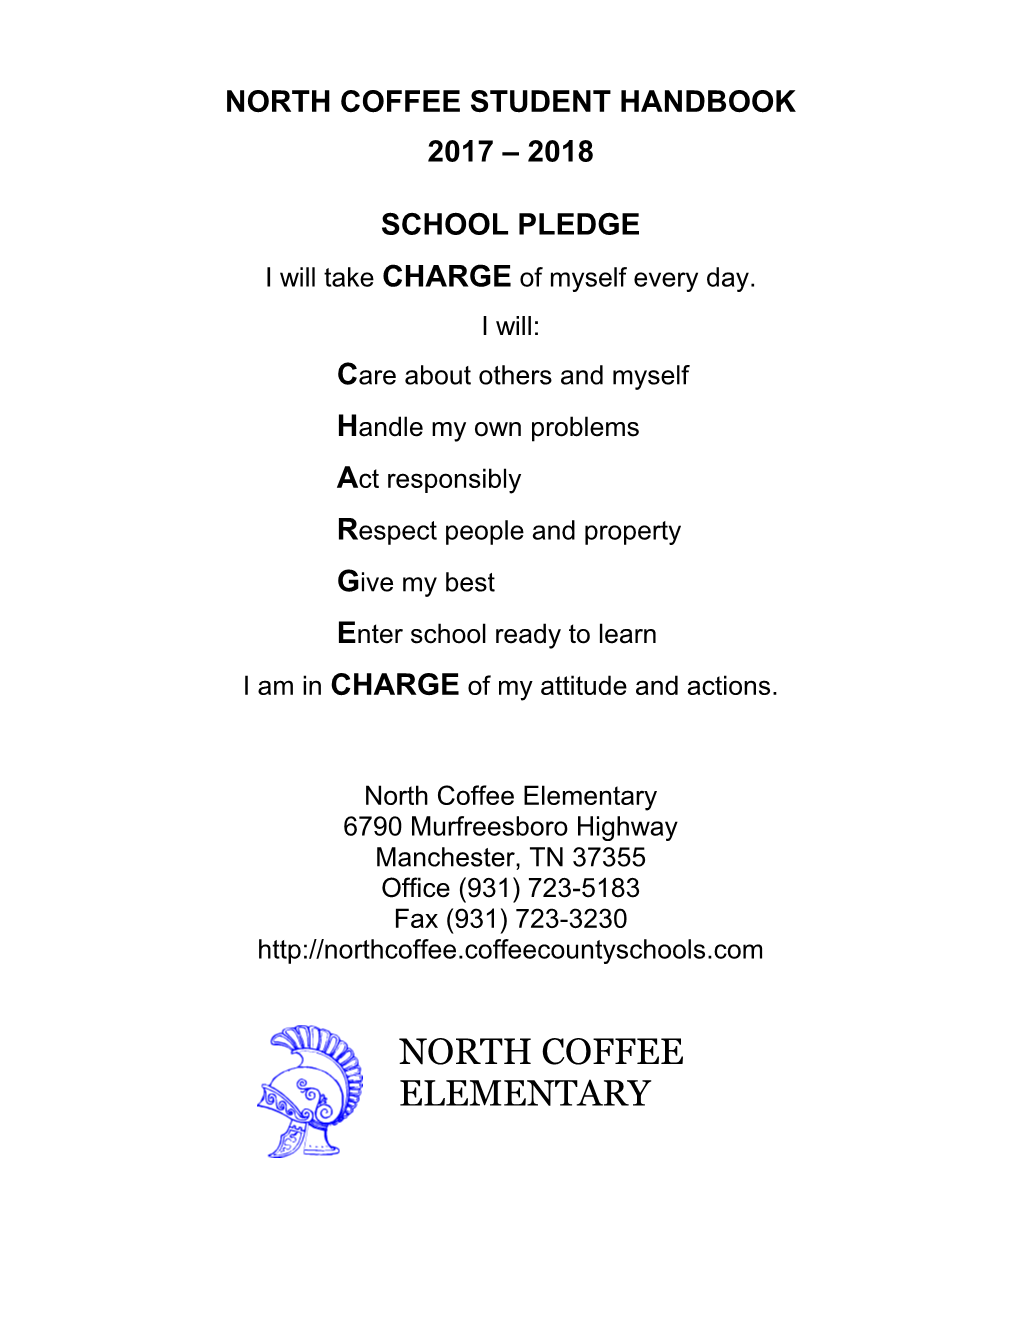 North Coffee Student Handbook